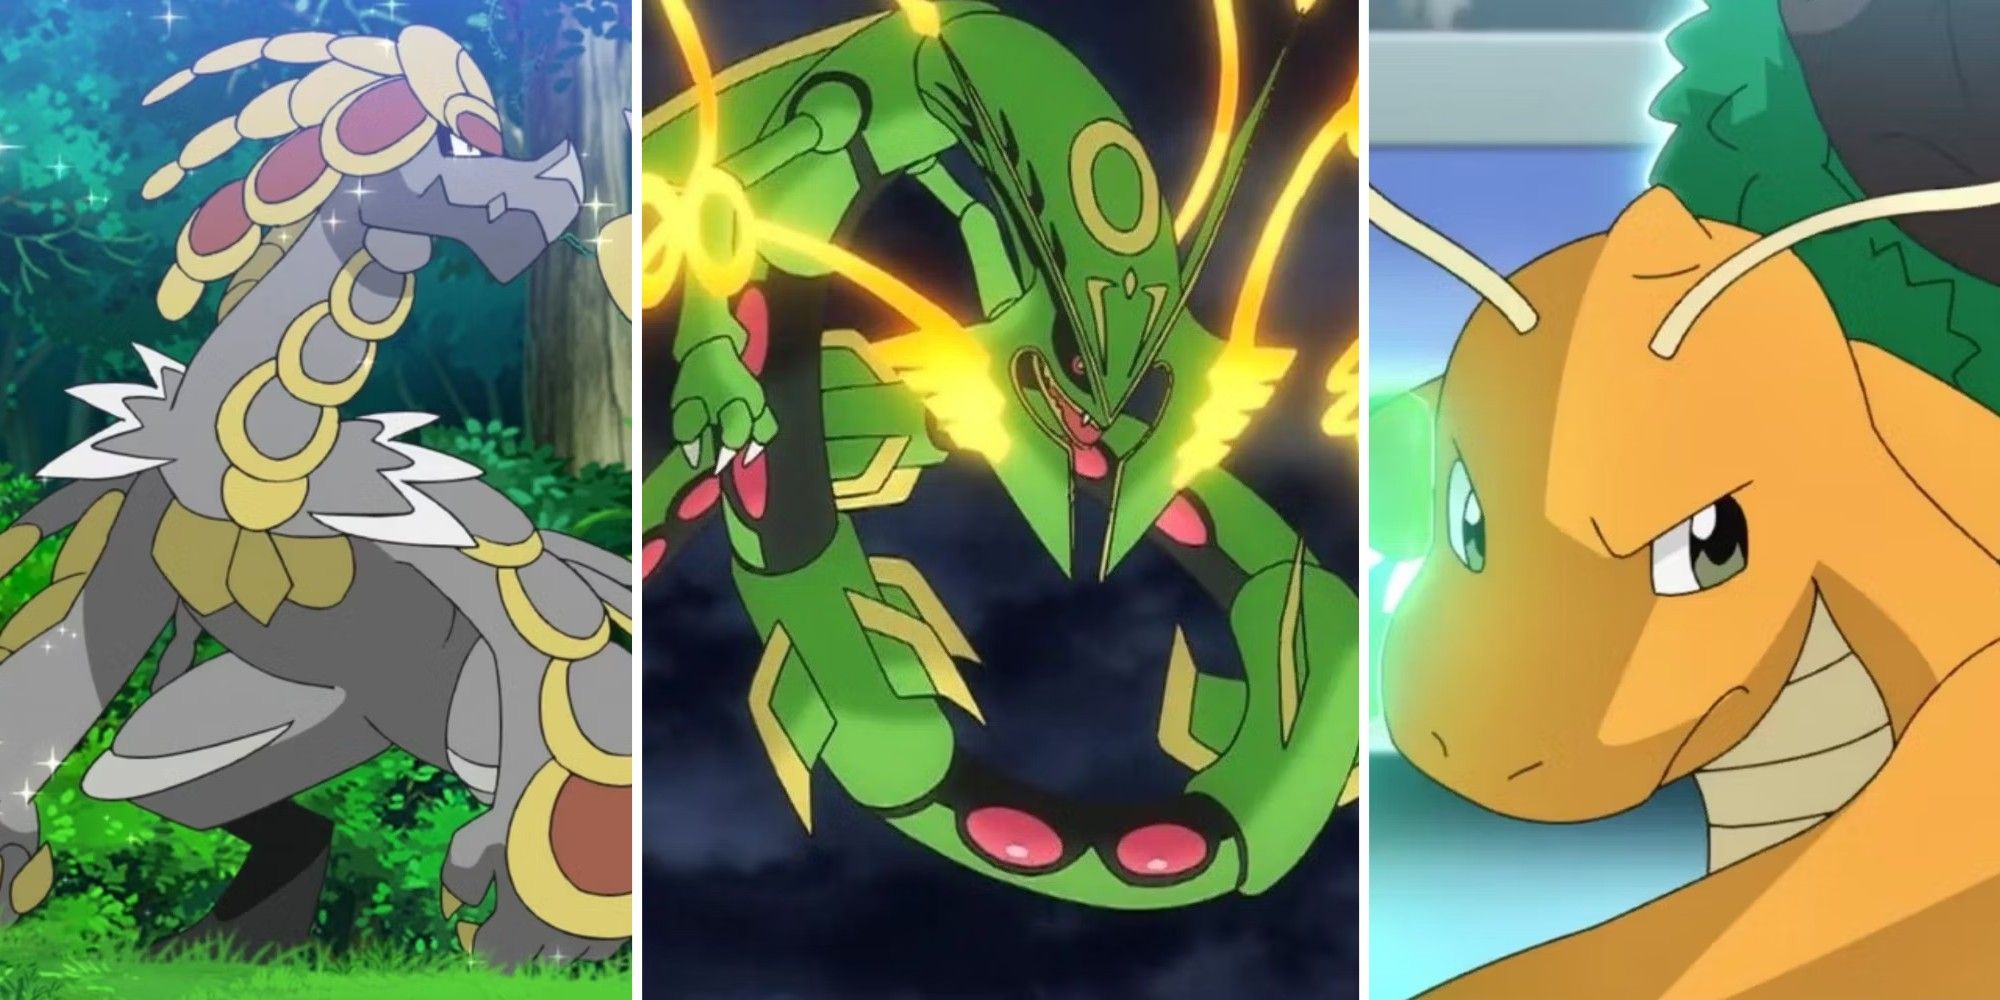 Die Drachentypen Pokémon Kommo-O, Rayquaza und Dragonite nebeneinander